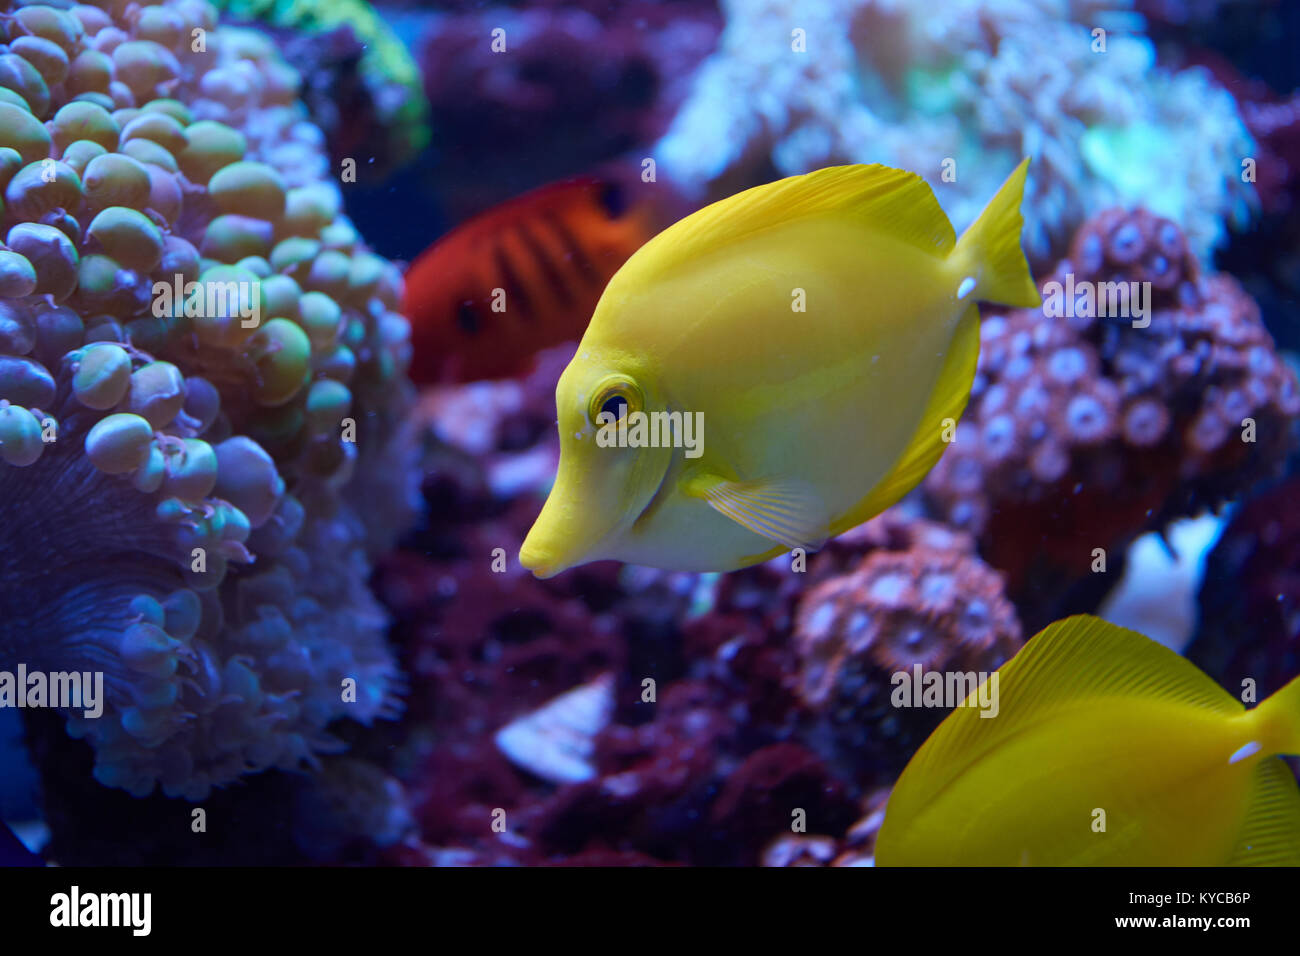 La linguetta gialla accanto a pesci coralli in acquario Foto Stock